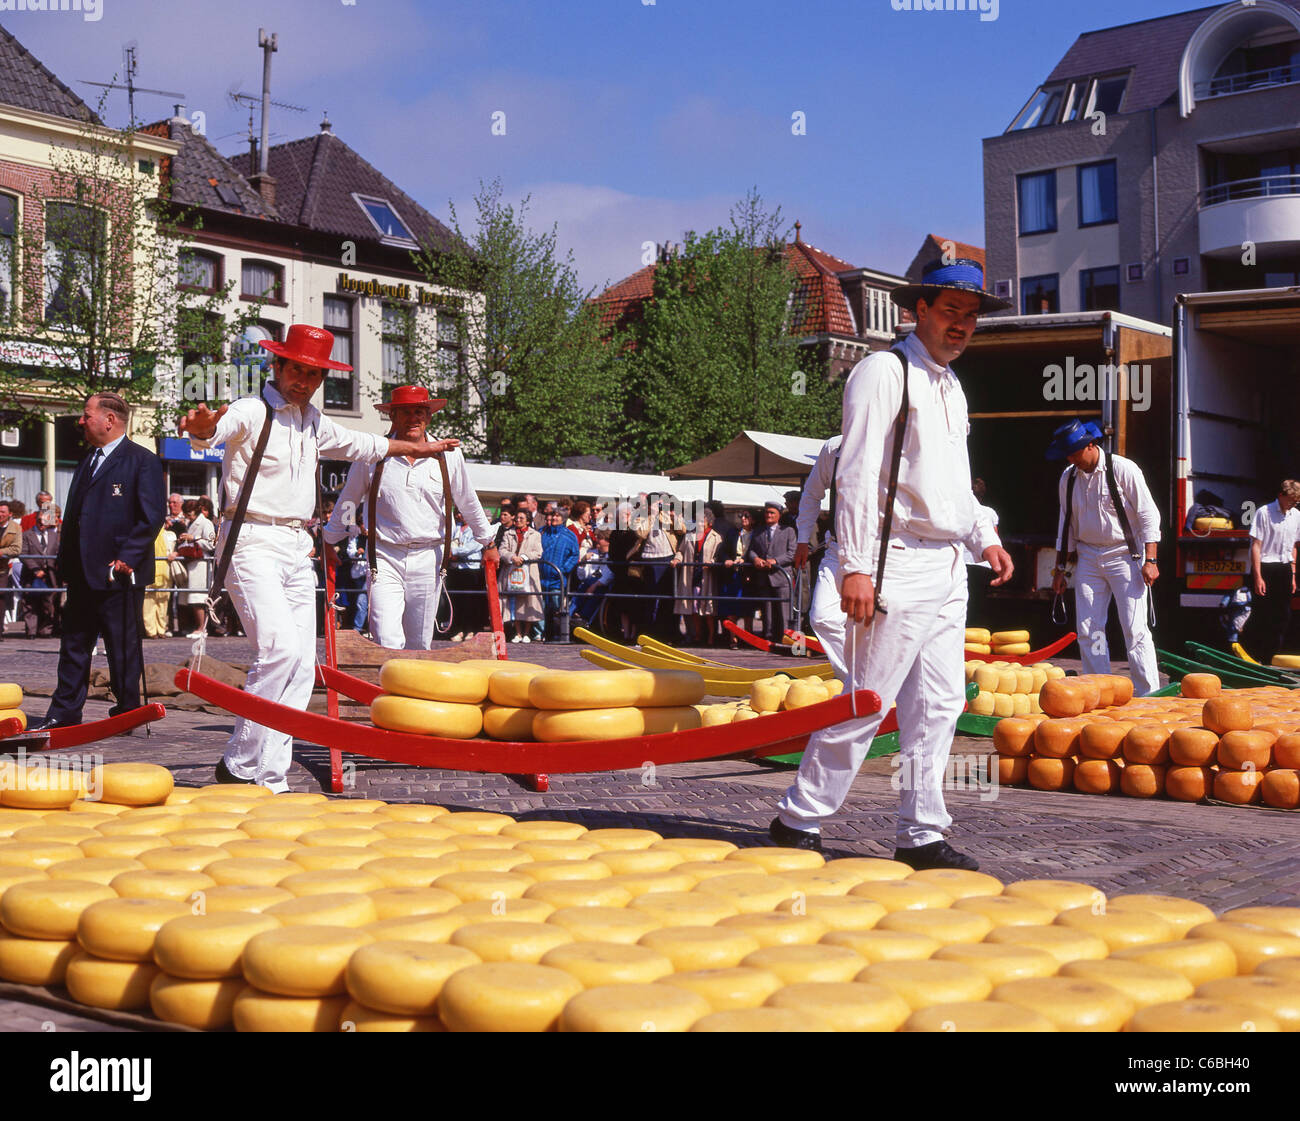 Formaggio-facchini ruote portanti di formaggio Gouda sulla slitta al mercato del formaggio di Alkmaar, Alkmaar, Noord Holland, il Regno dei Paesi Bassi Foto Stock